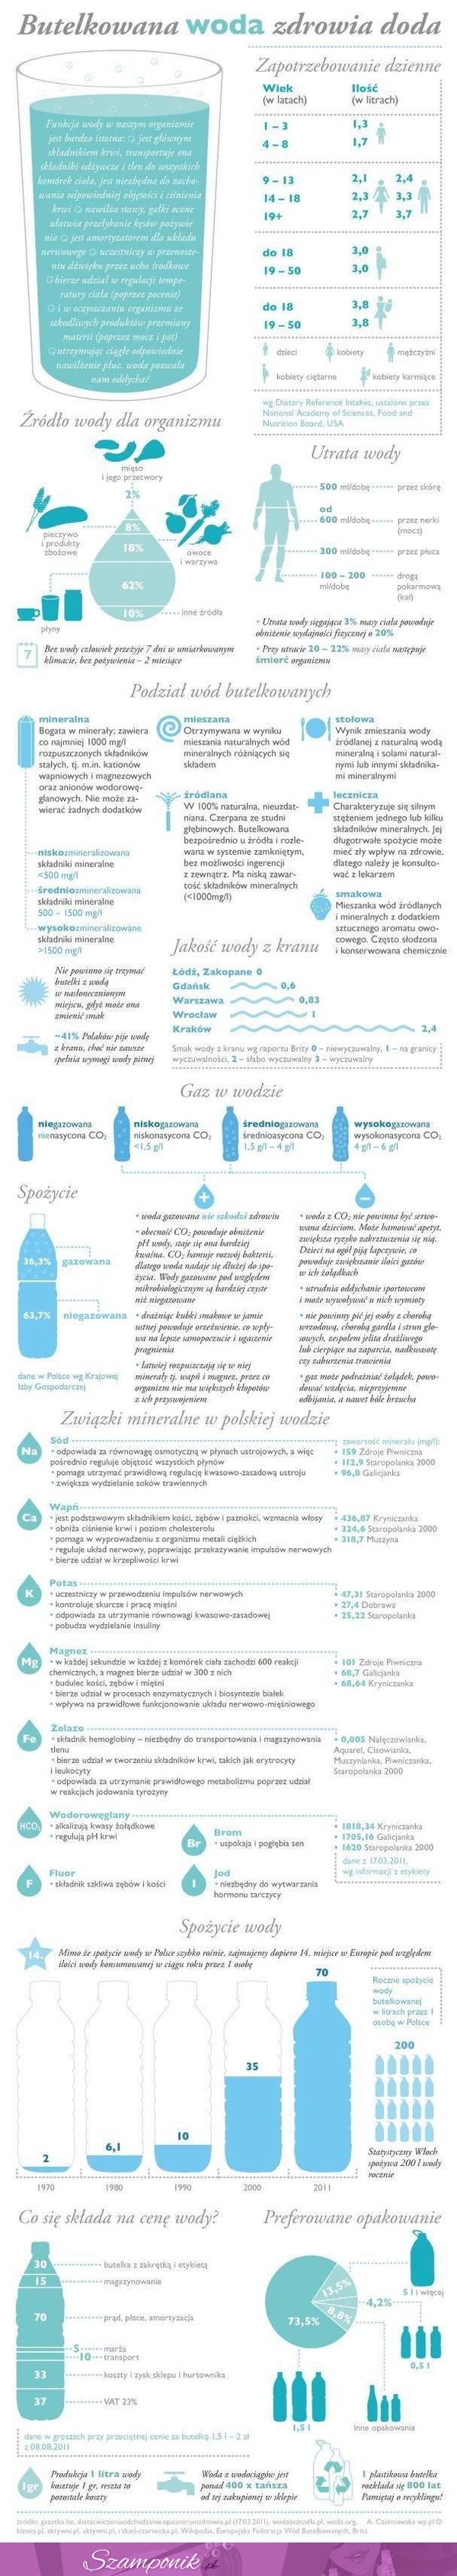 Czy wiesz ile musisz pić wody dziennie